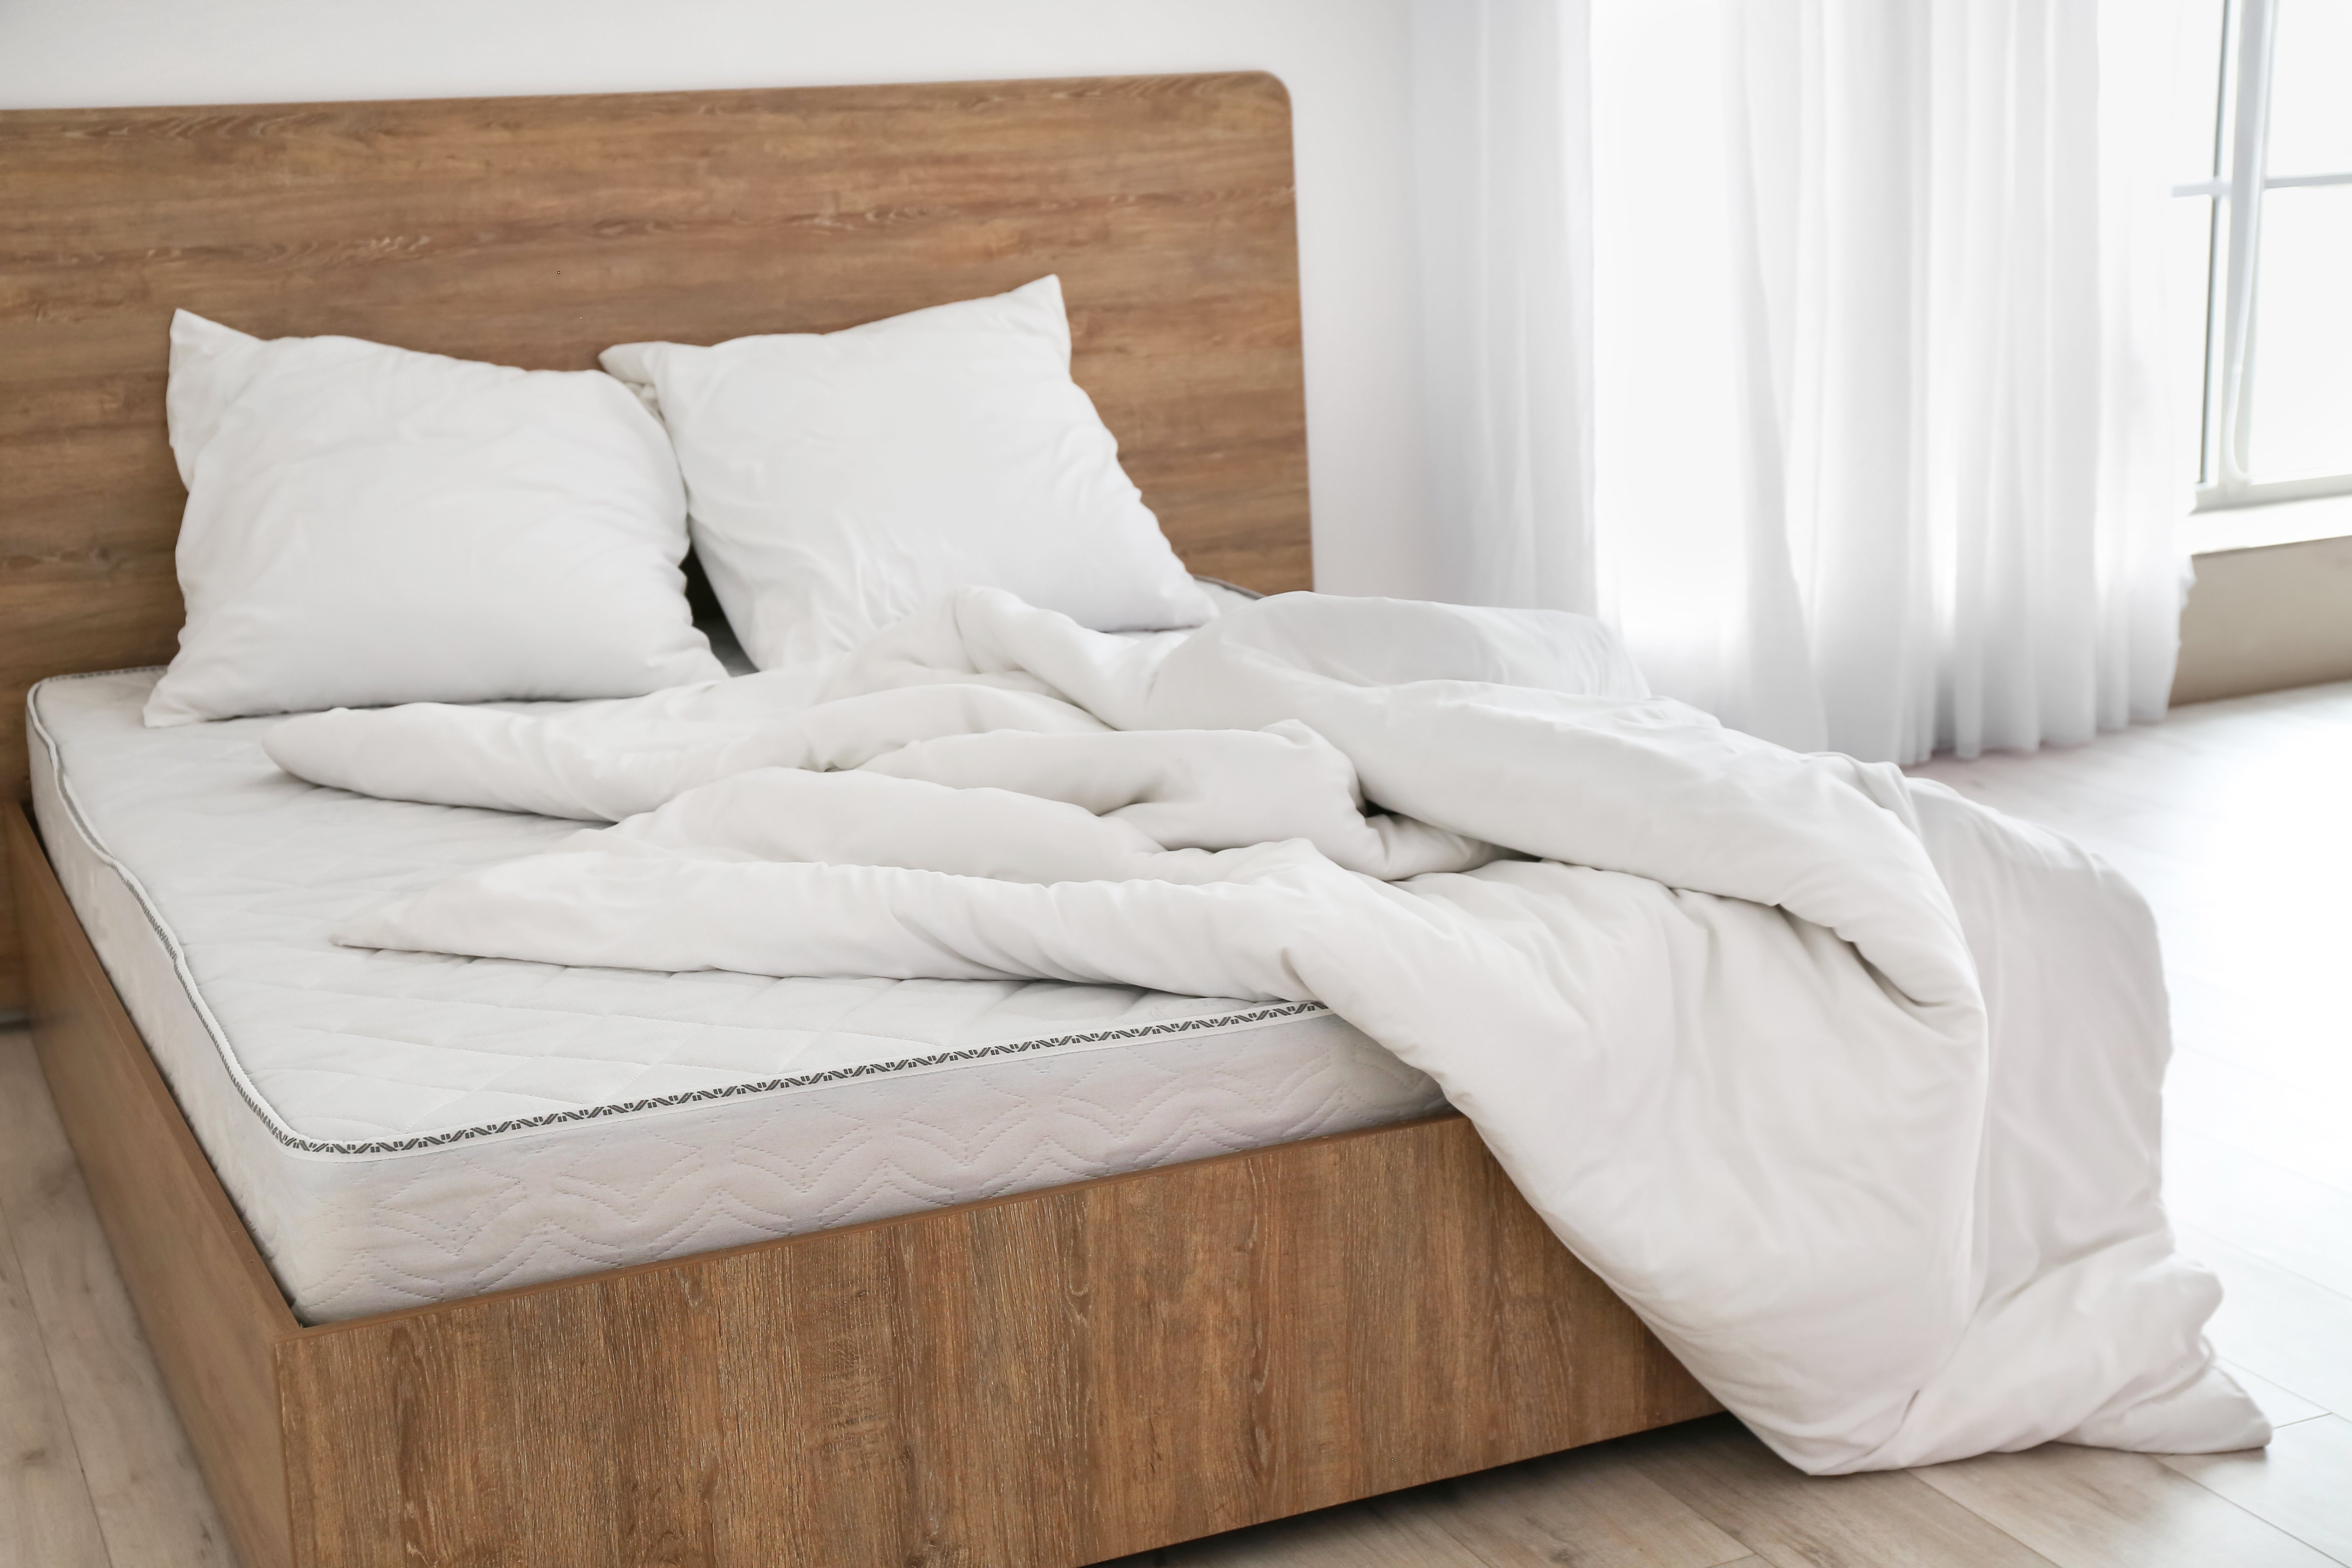 Auf einem Bett liegt eine weiße Matratze, zwei weiße Kissen und eine weiße Daunendecke.